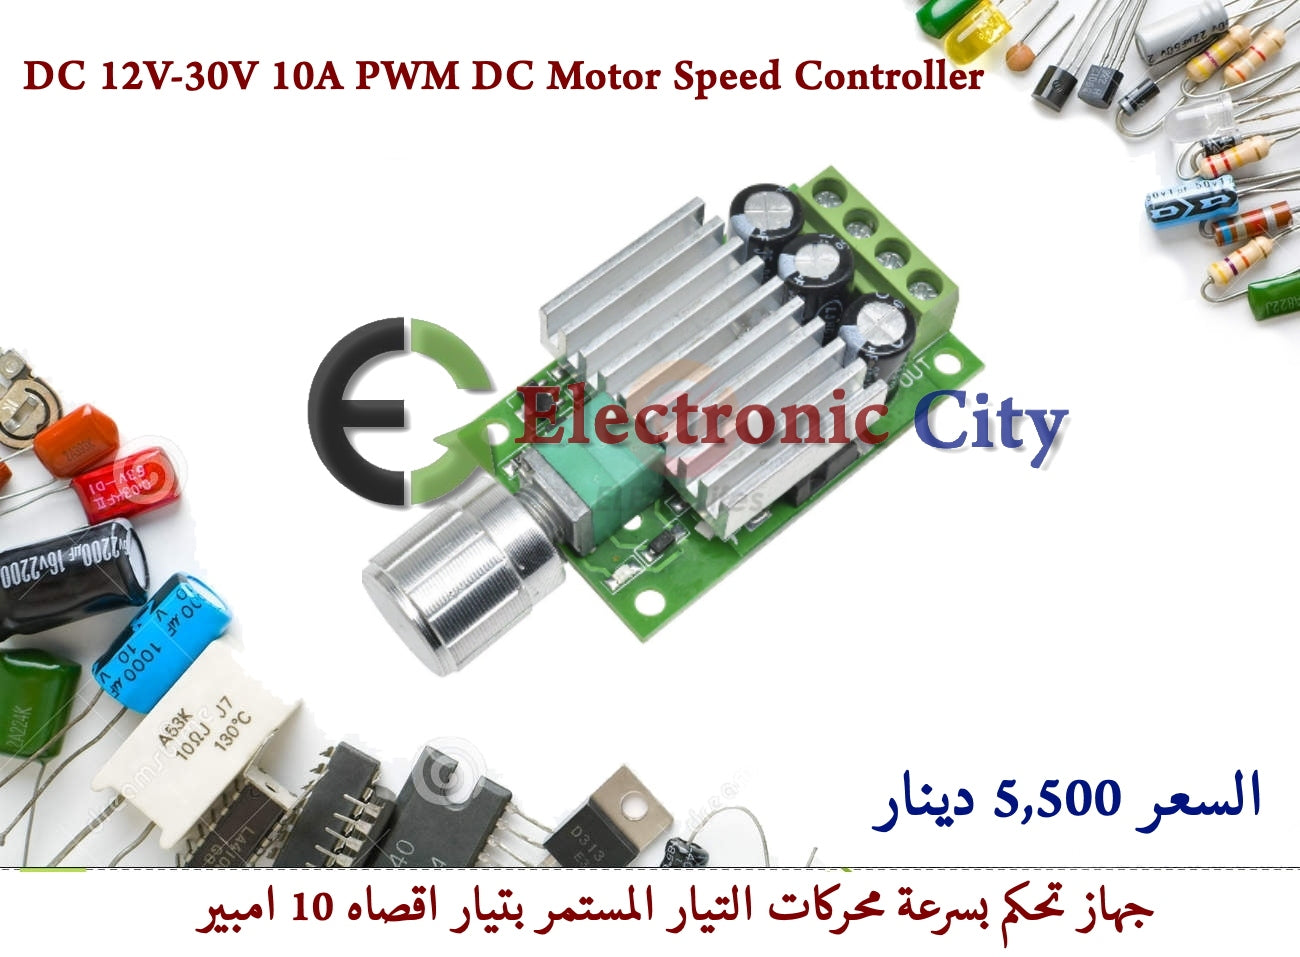 DC 12V-30V 10A PWM DC Motor Speed Controller #O9 012397